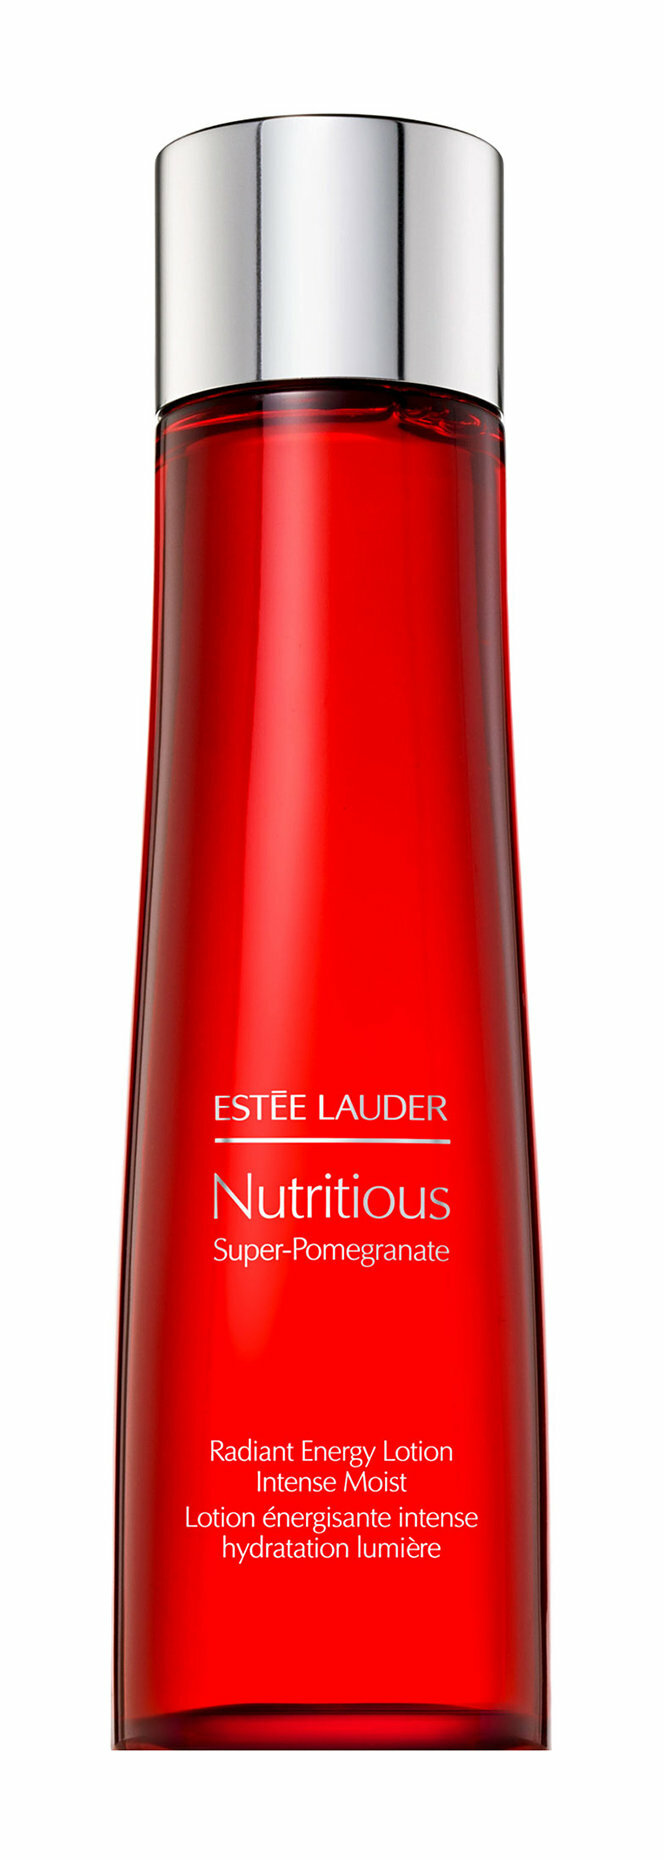 Estee Lauder Тоник Nutritious Super-Pomegranate увлажняющий с комплексом антиоксидантов для здорового сияния лица, 200 мл